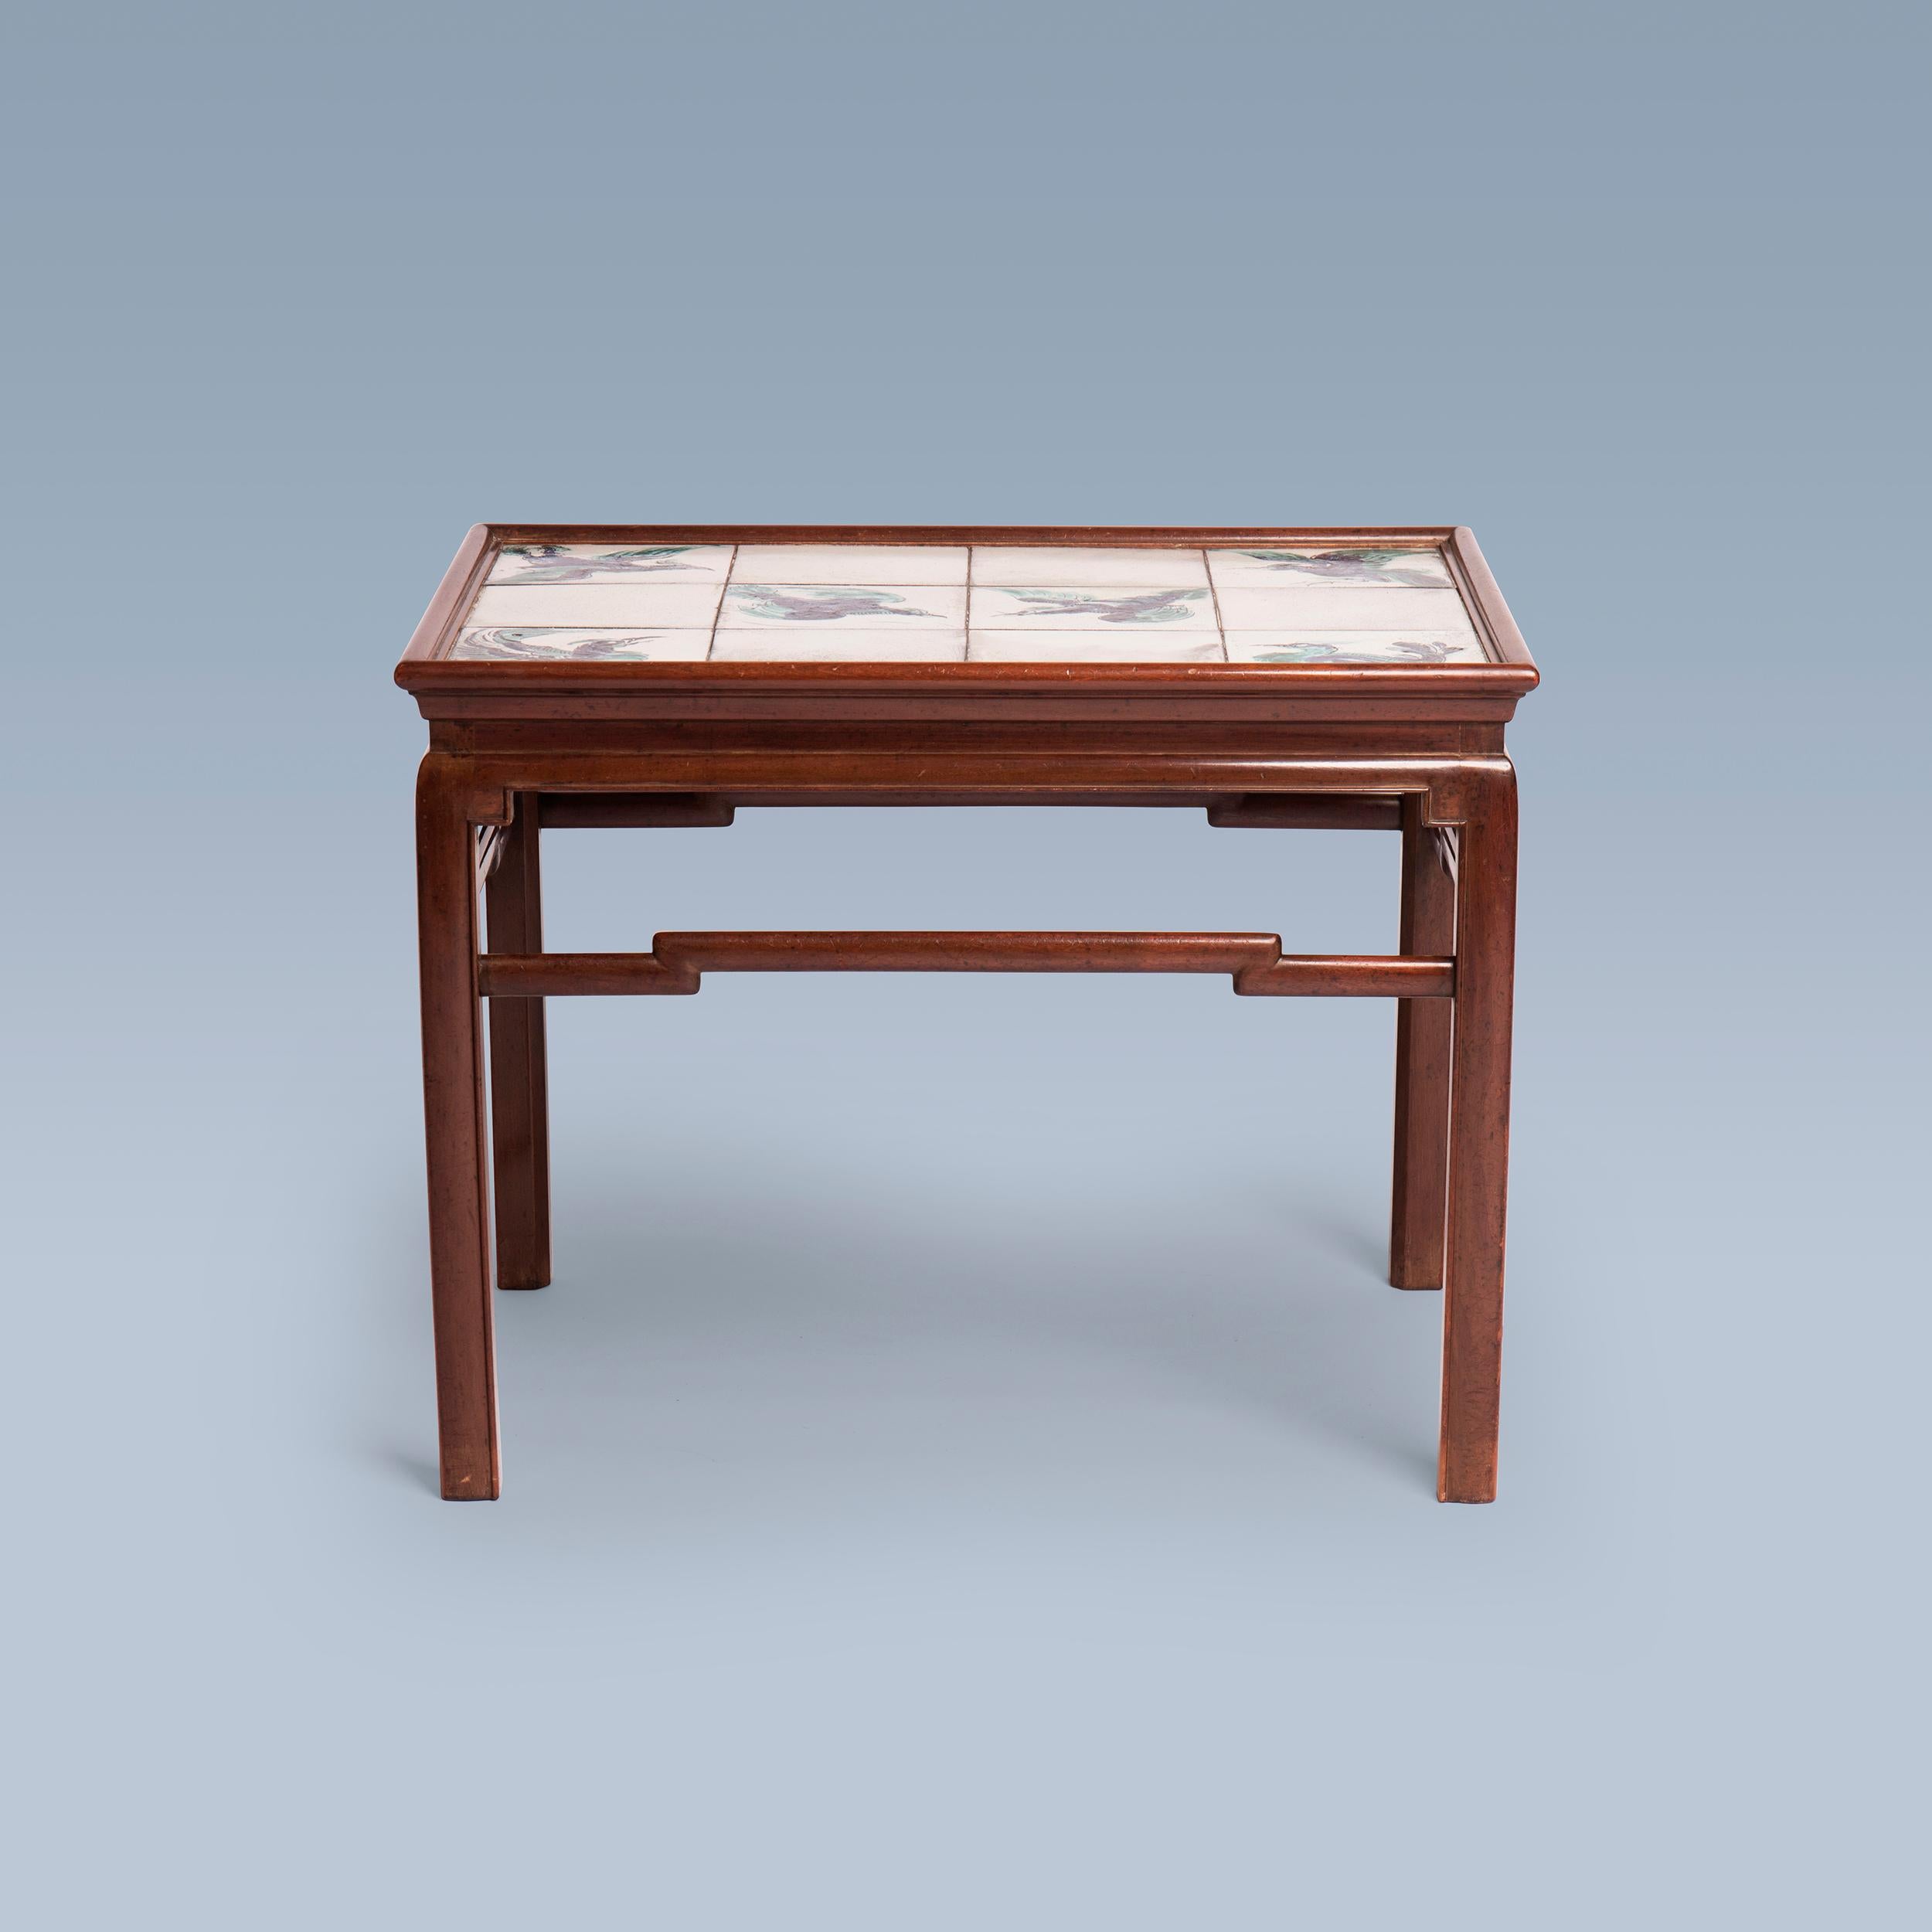 Cette table basse en acajou d'inspiration chinoise a été réalisée par l'ébéniste Frits Henningsen (1889-1965) dans les années 1930.
Le plateau de la table est décoré de carreaux uniques représentant les oiseaux chinois Fenghuang, également appelés